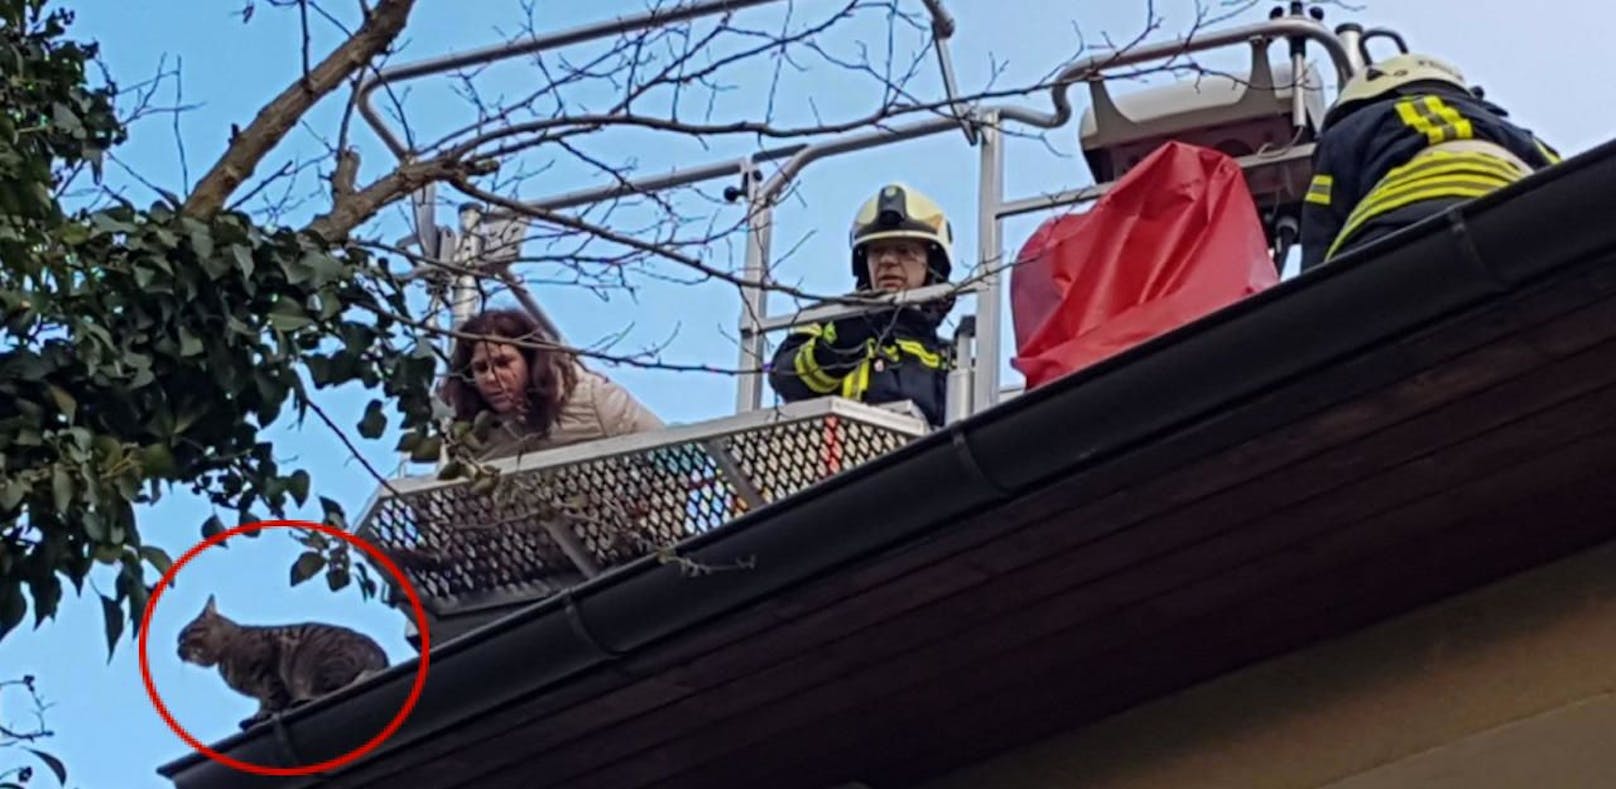 Kater Felix lief auf Dach vor Feuerwehr davon